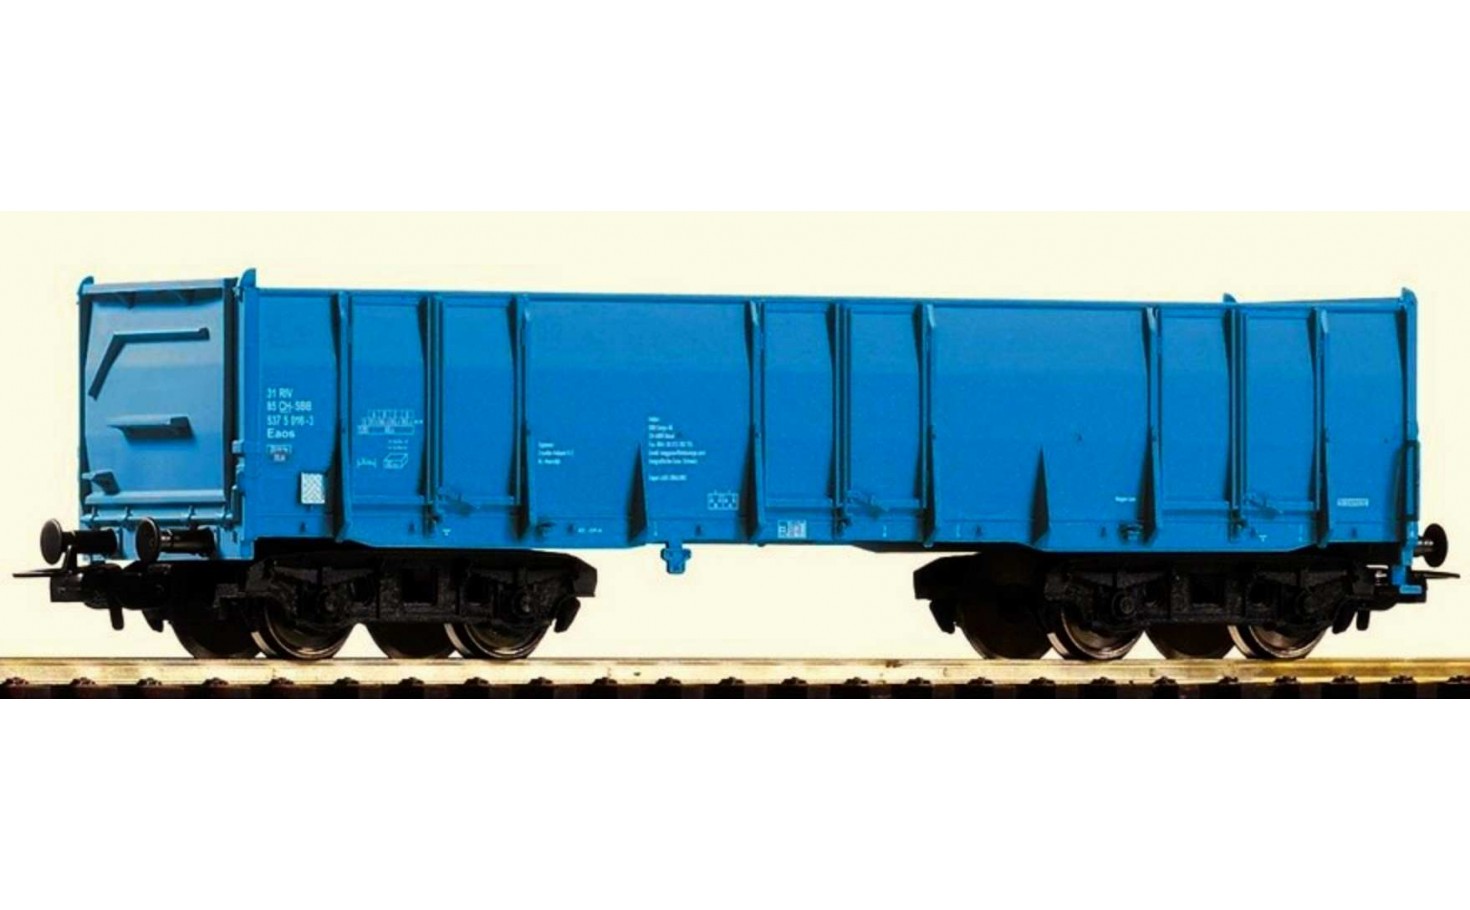 Piko 98546B4. Wagon towarowy Eaos SBB Cargo AG, ep.VI, skala H0